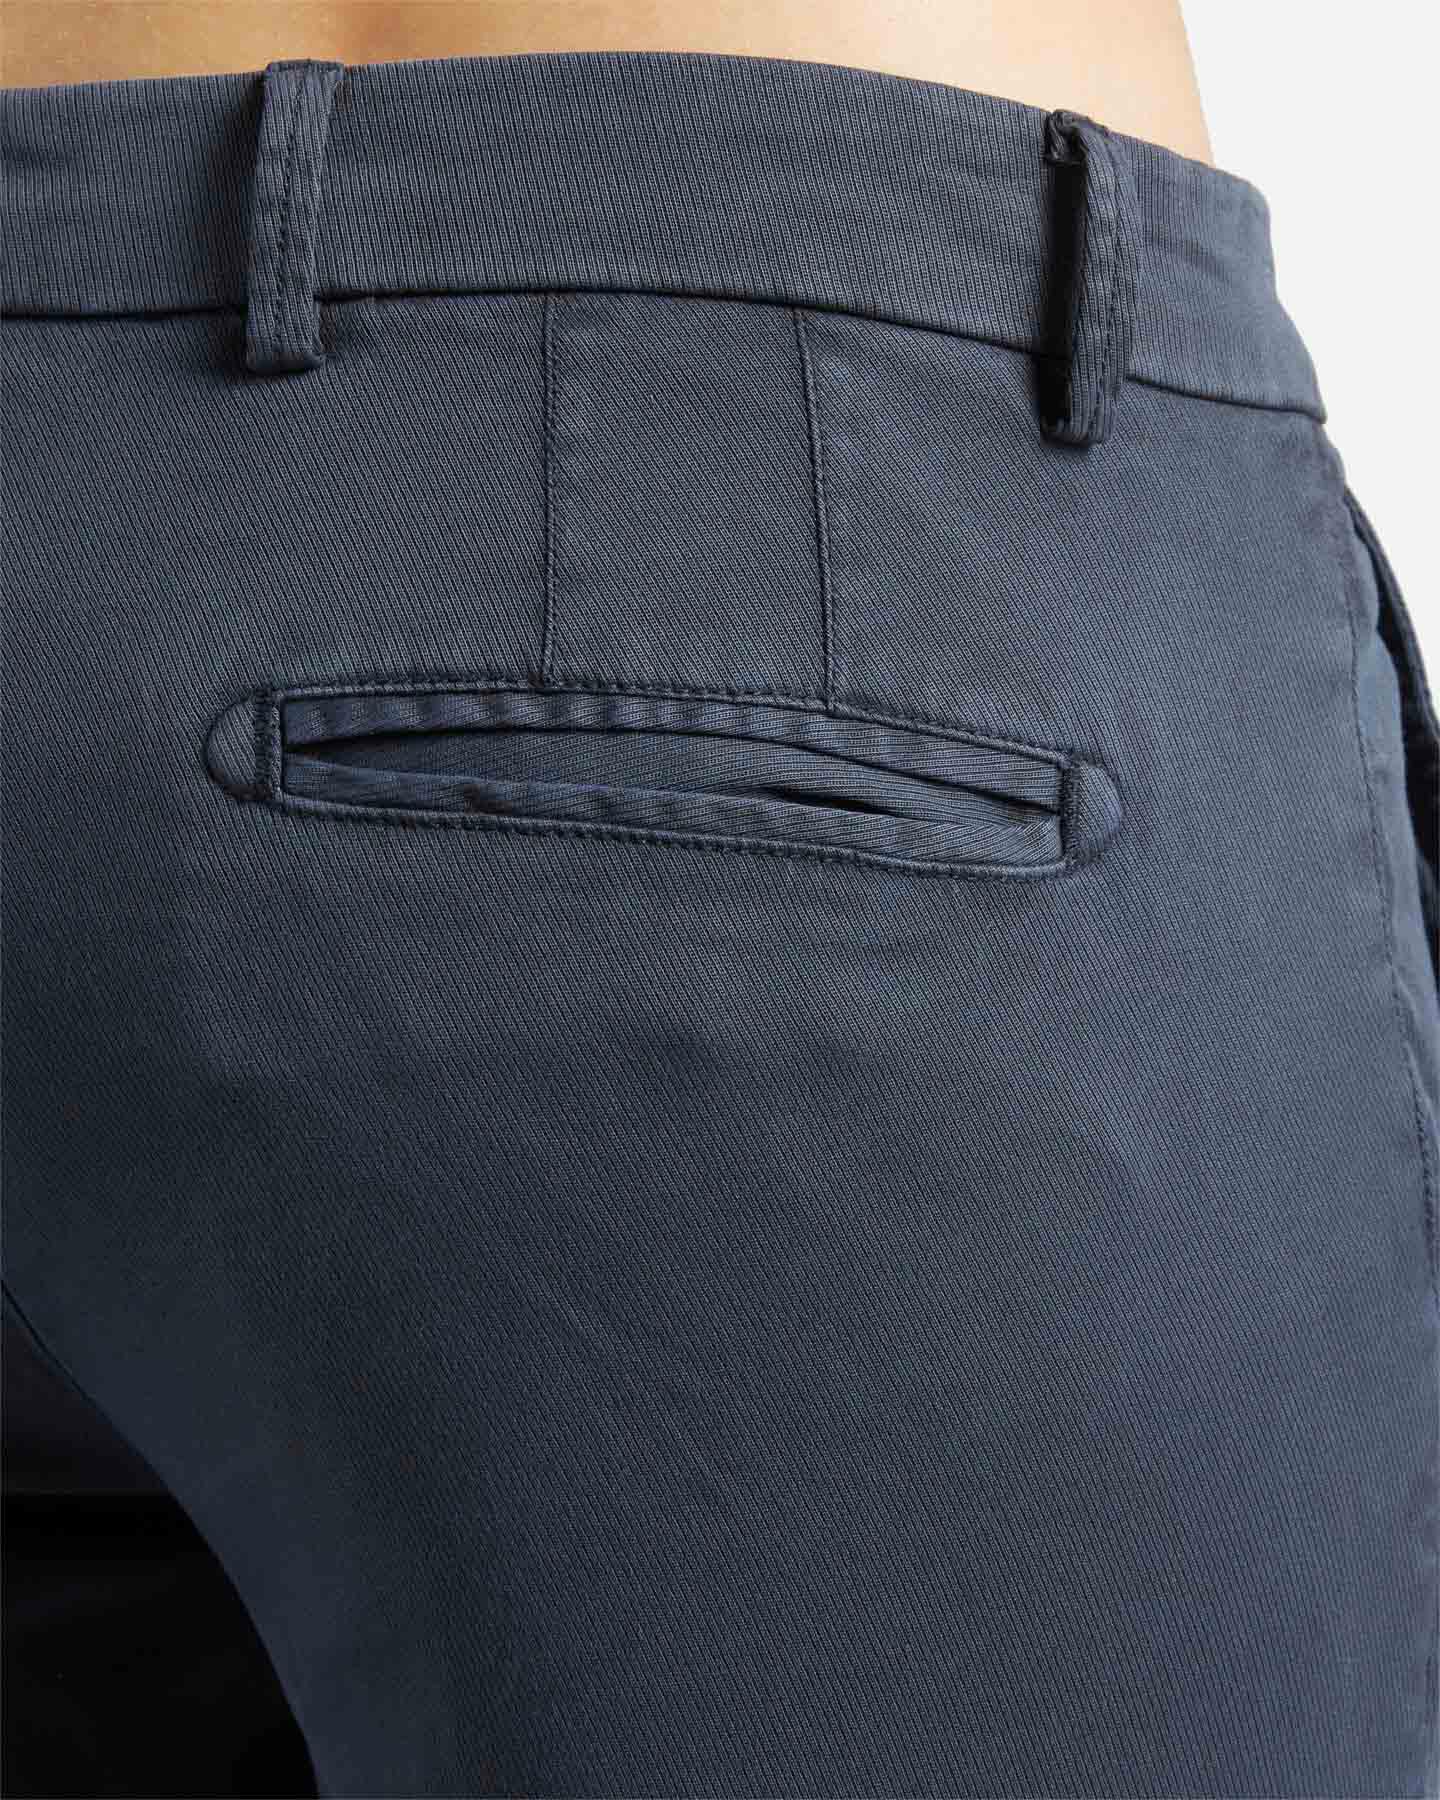  Pantalone DACK'S URBAN M S4125381|858|44 scatto 3